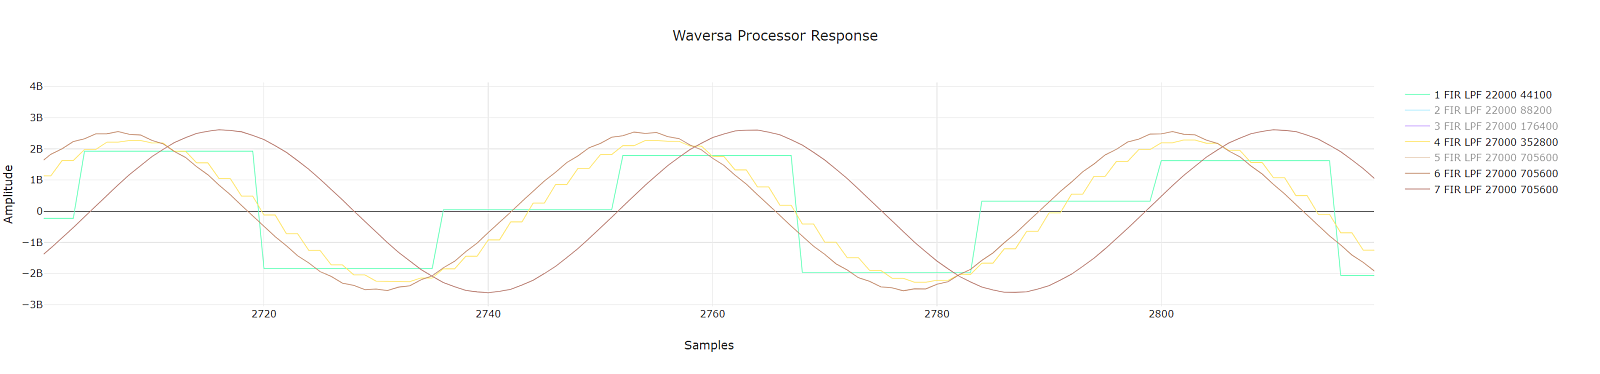 完璧な音声信号処理のSoC、Waversaオーディオプロセッサー 2